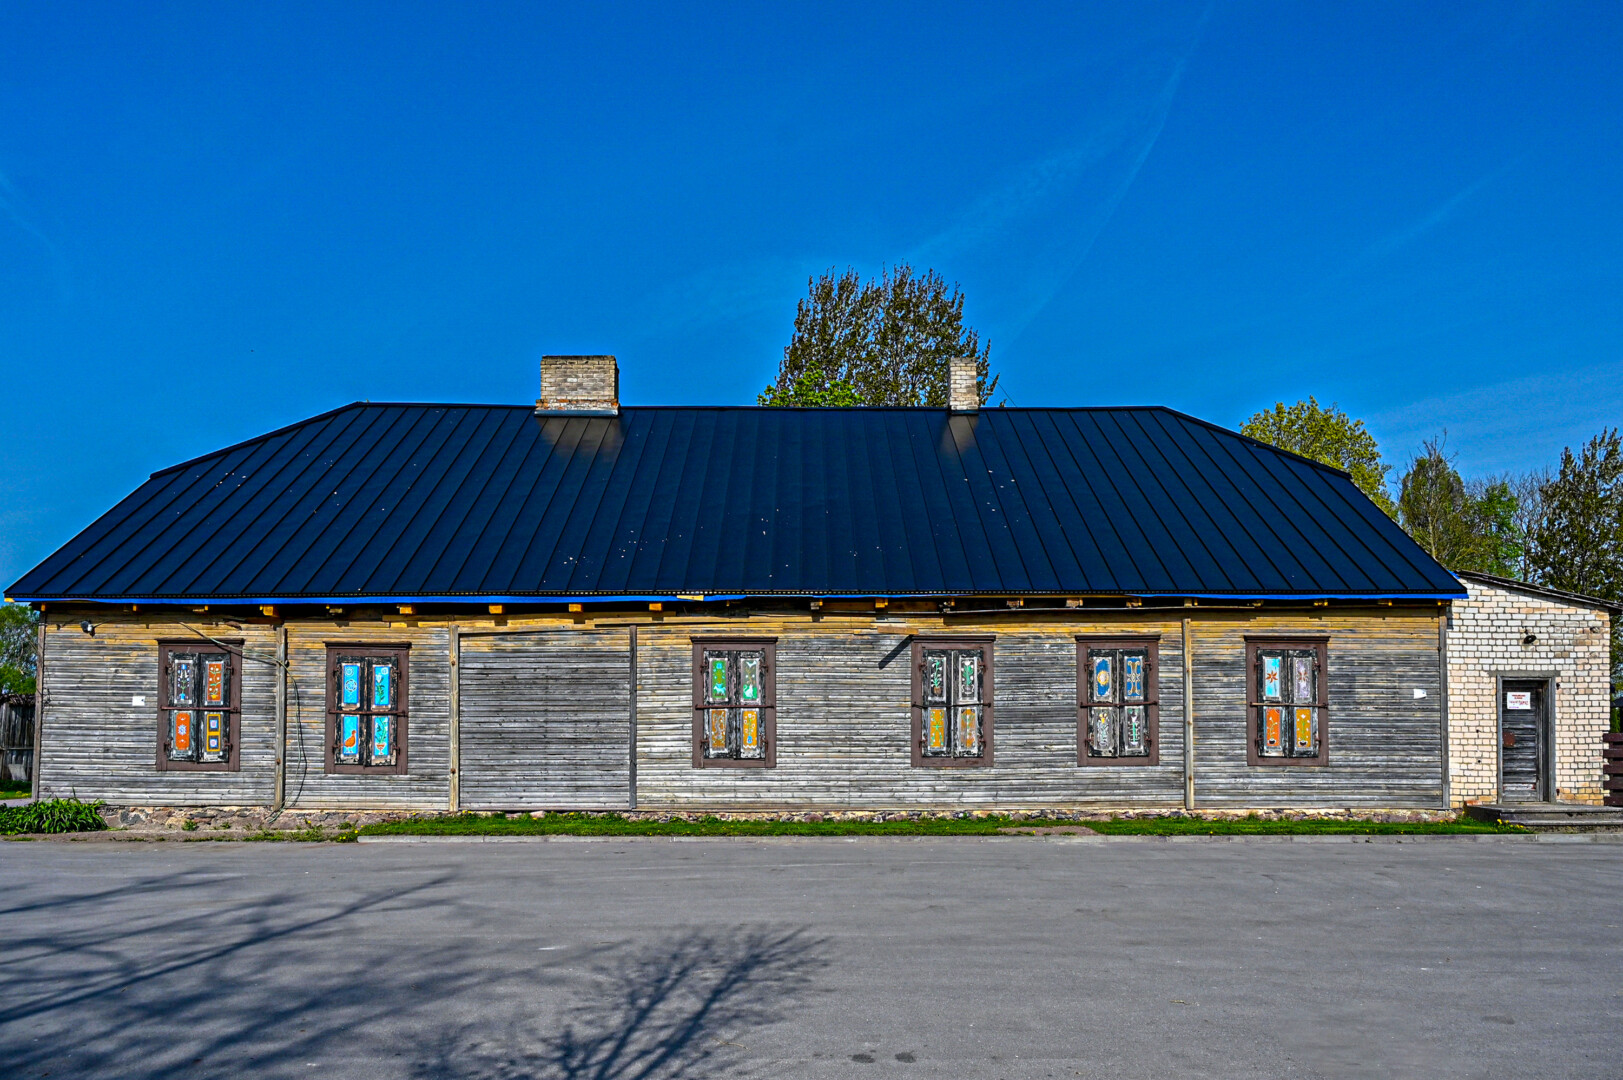 Buvusio Eidrigevičių dvaro vietoje dabar įsikūręs Upytės tradicinių amatų centras. G. Kartano nuotr.